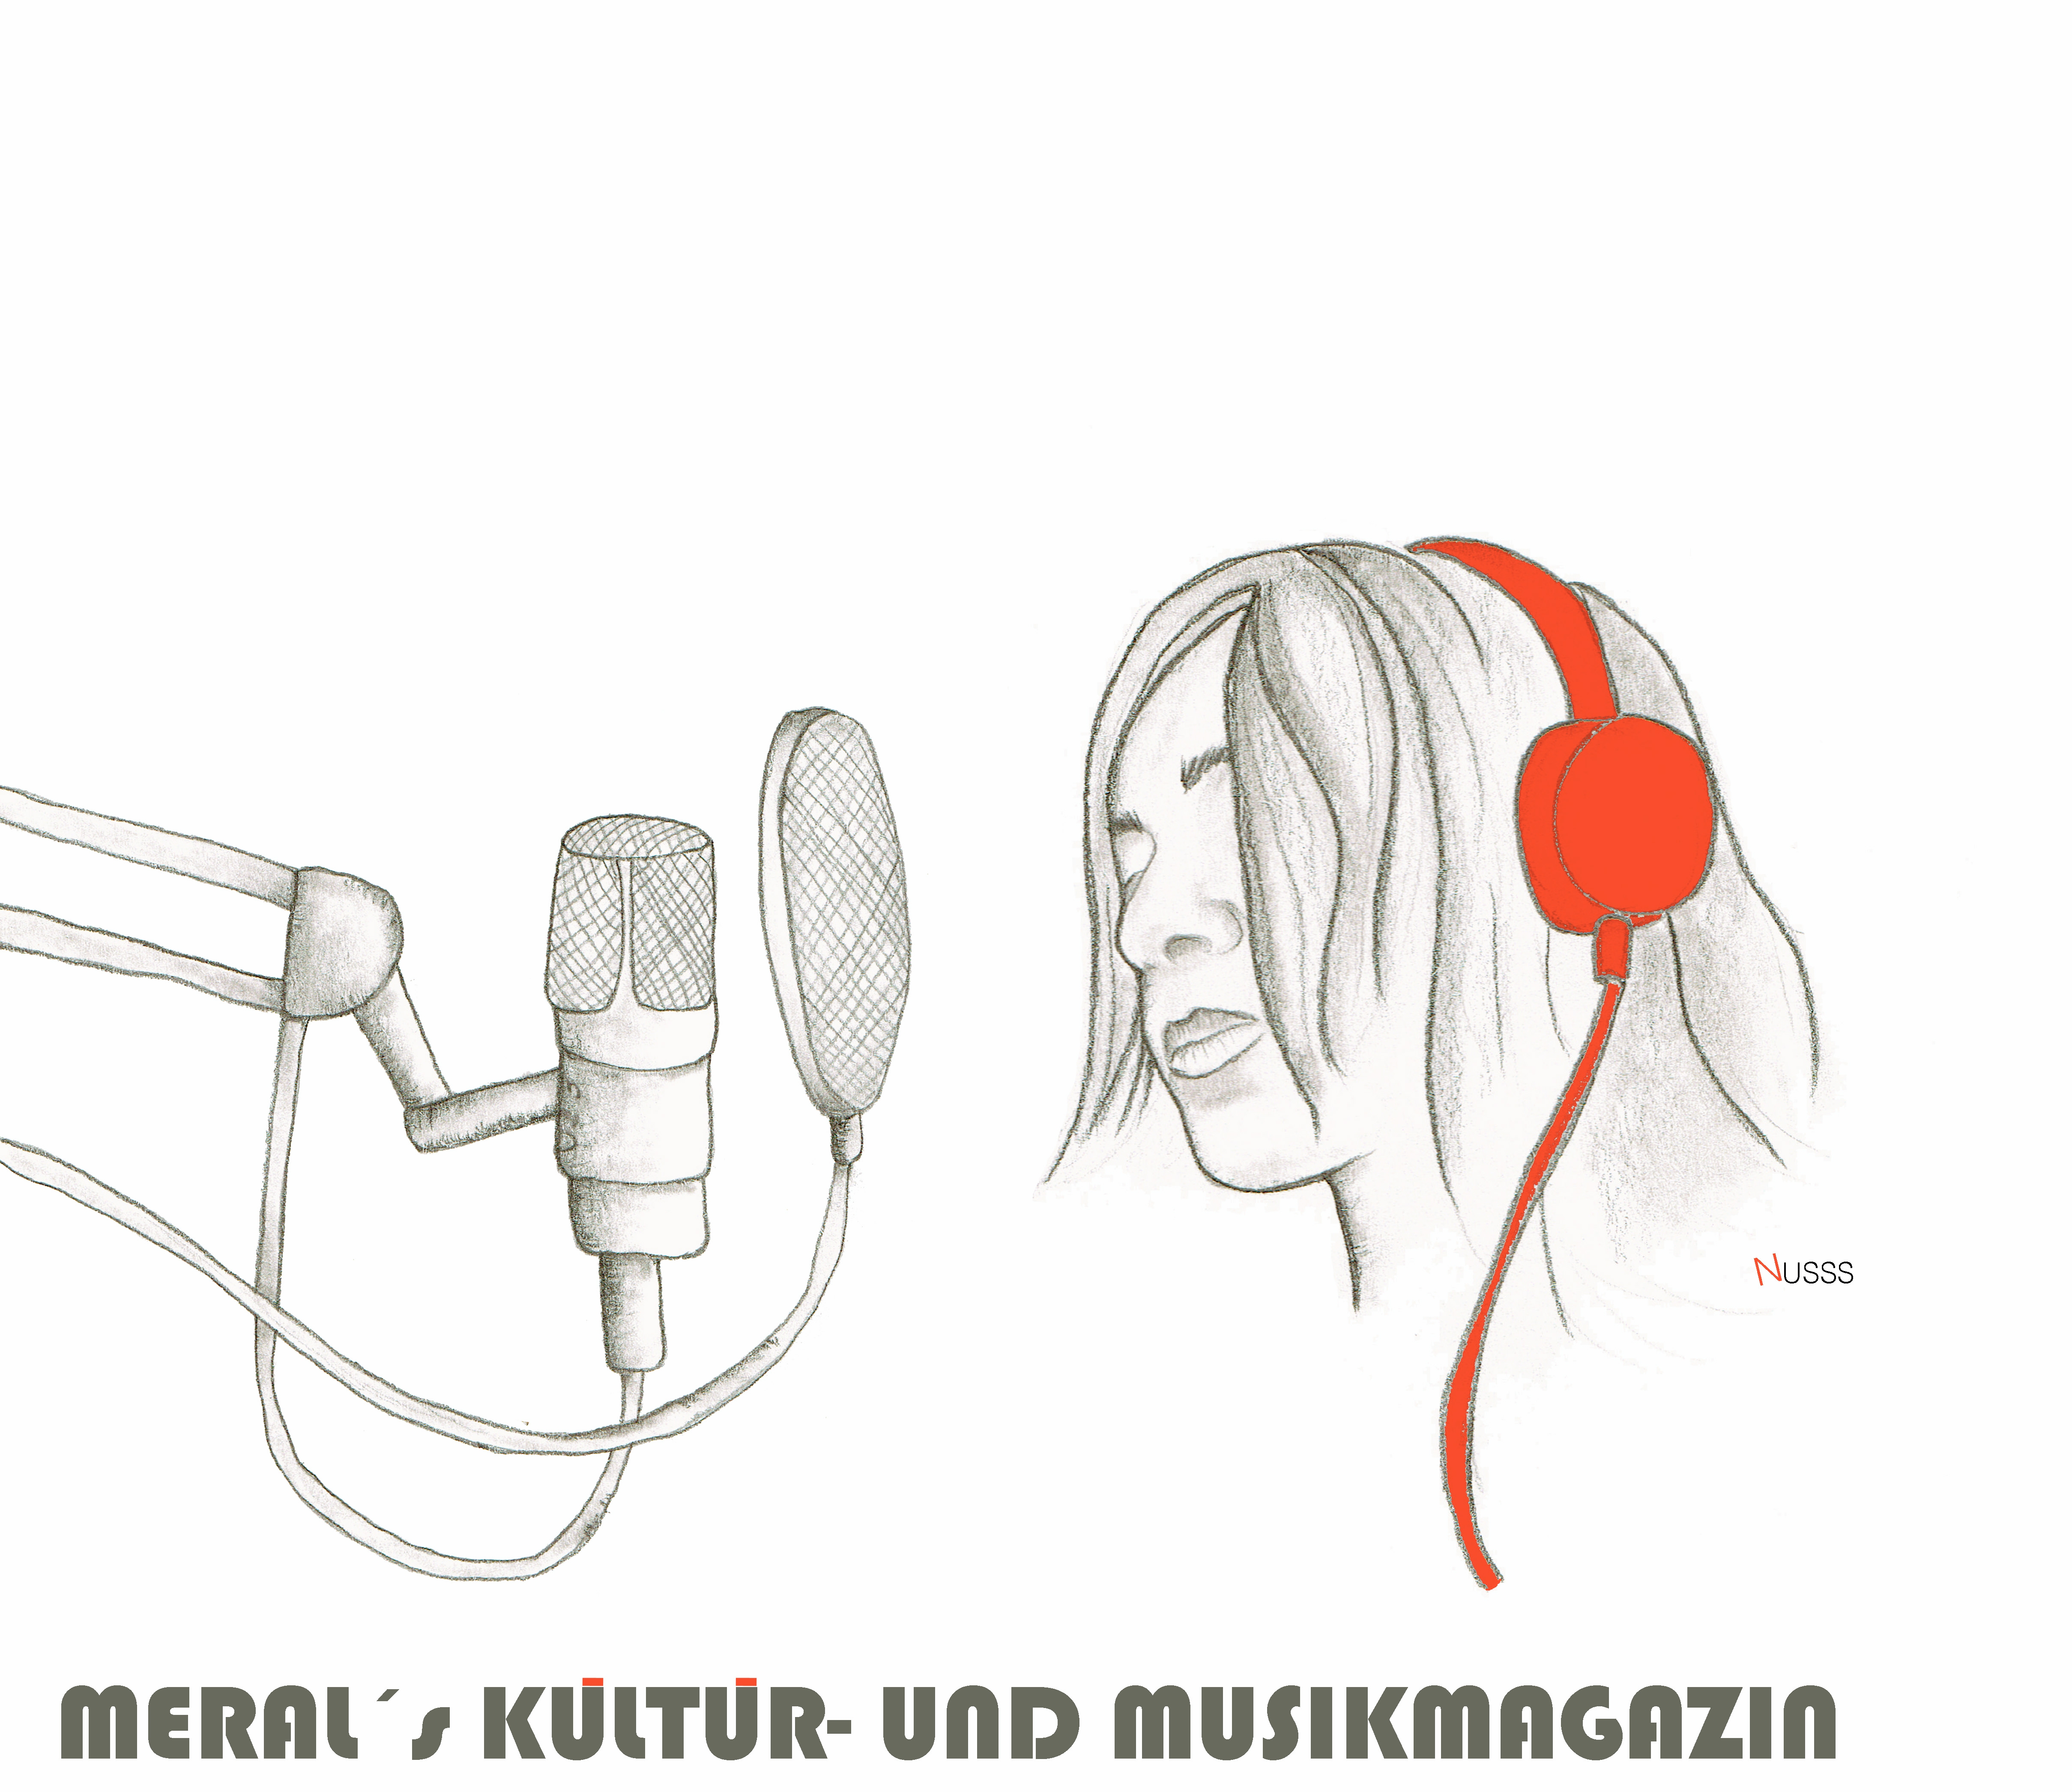 Meral’s Kultur- und Musikmagazin